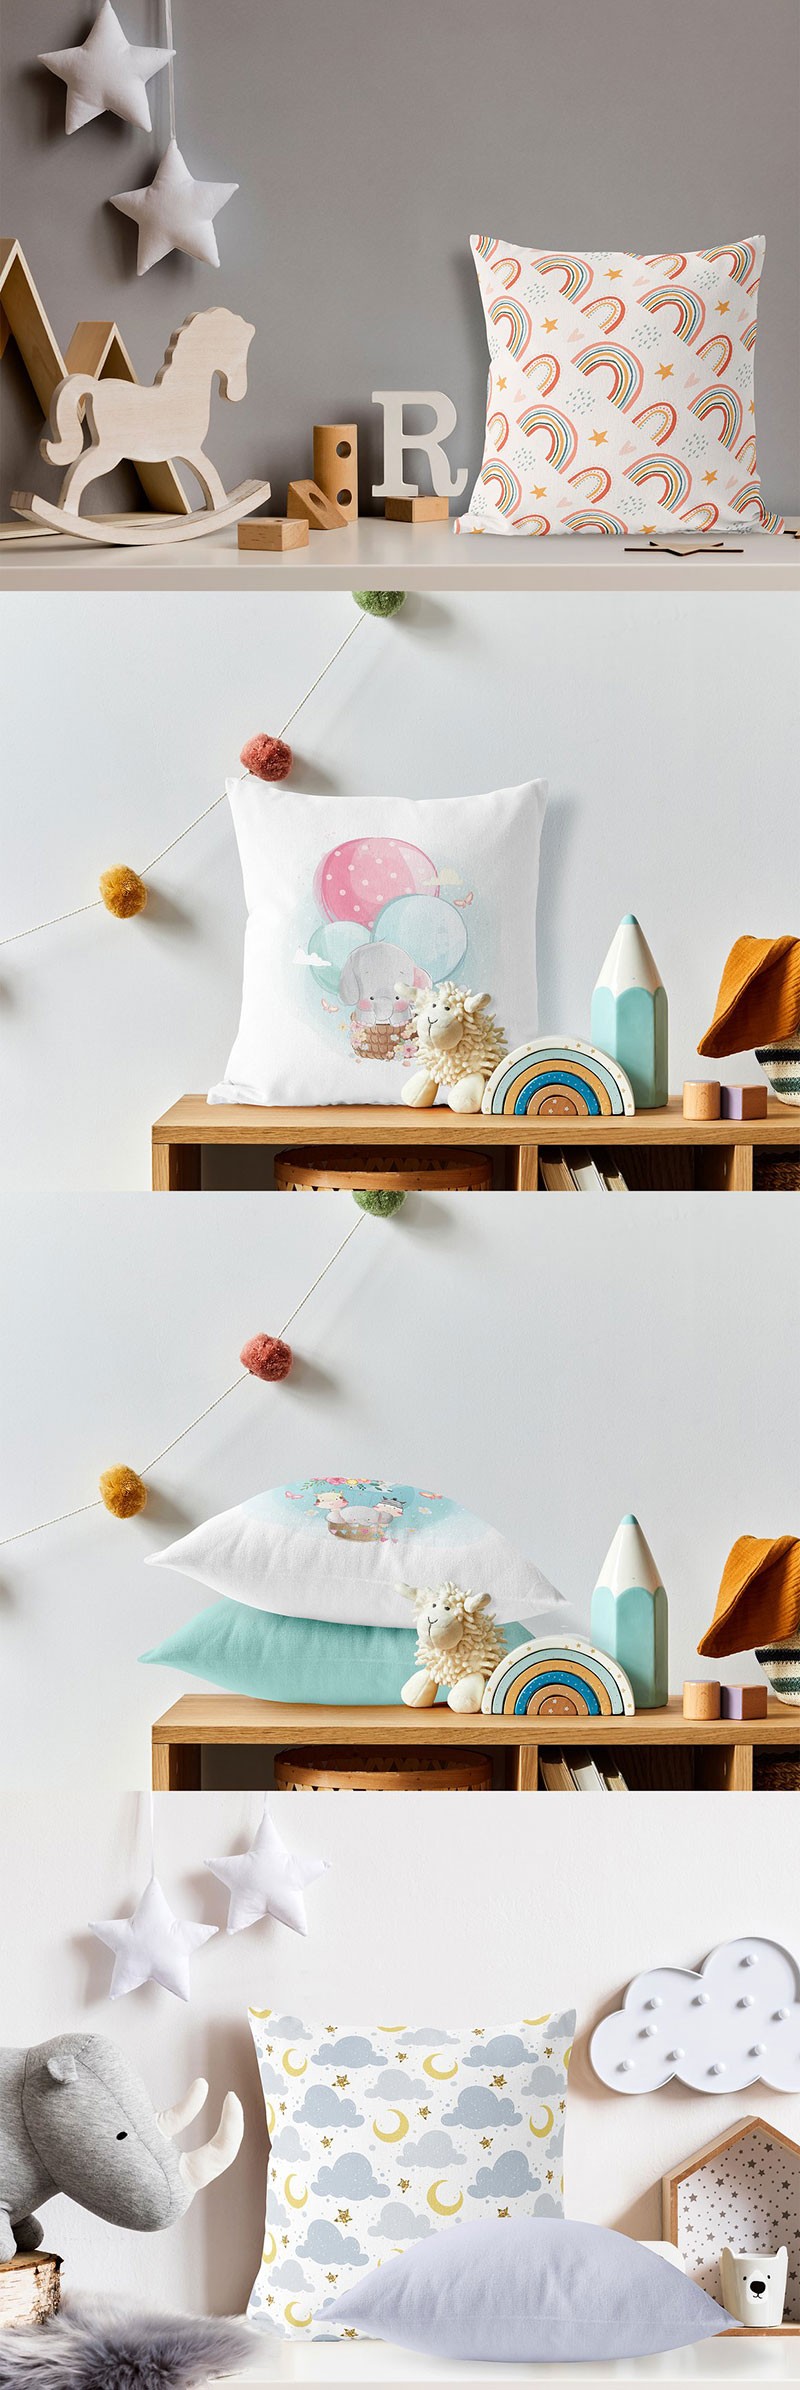 儿童房场景枕头设计展示样机PSD模板 样机素材 第4张